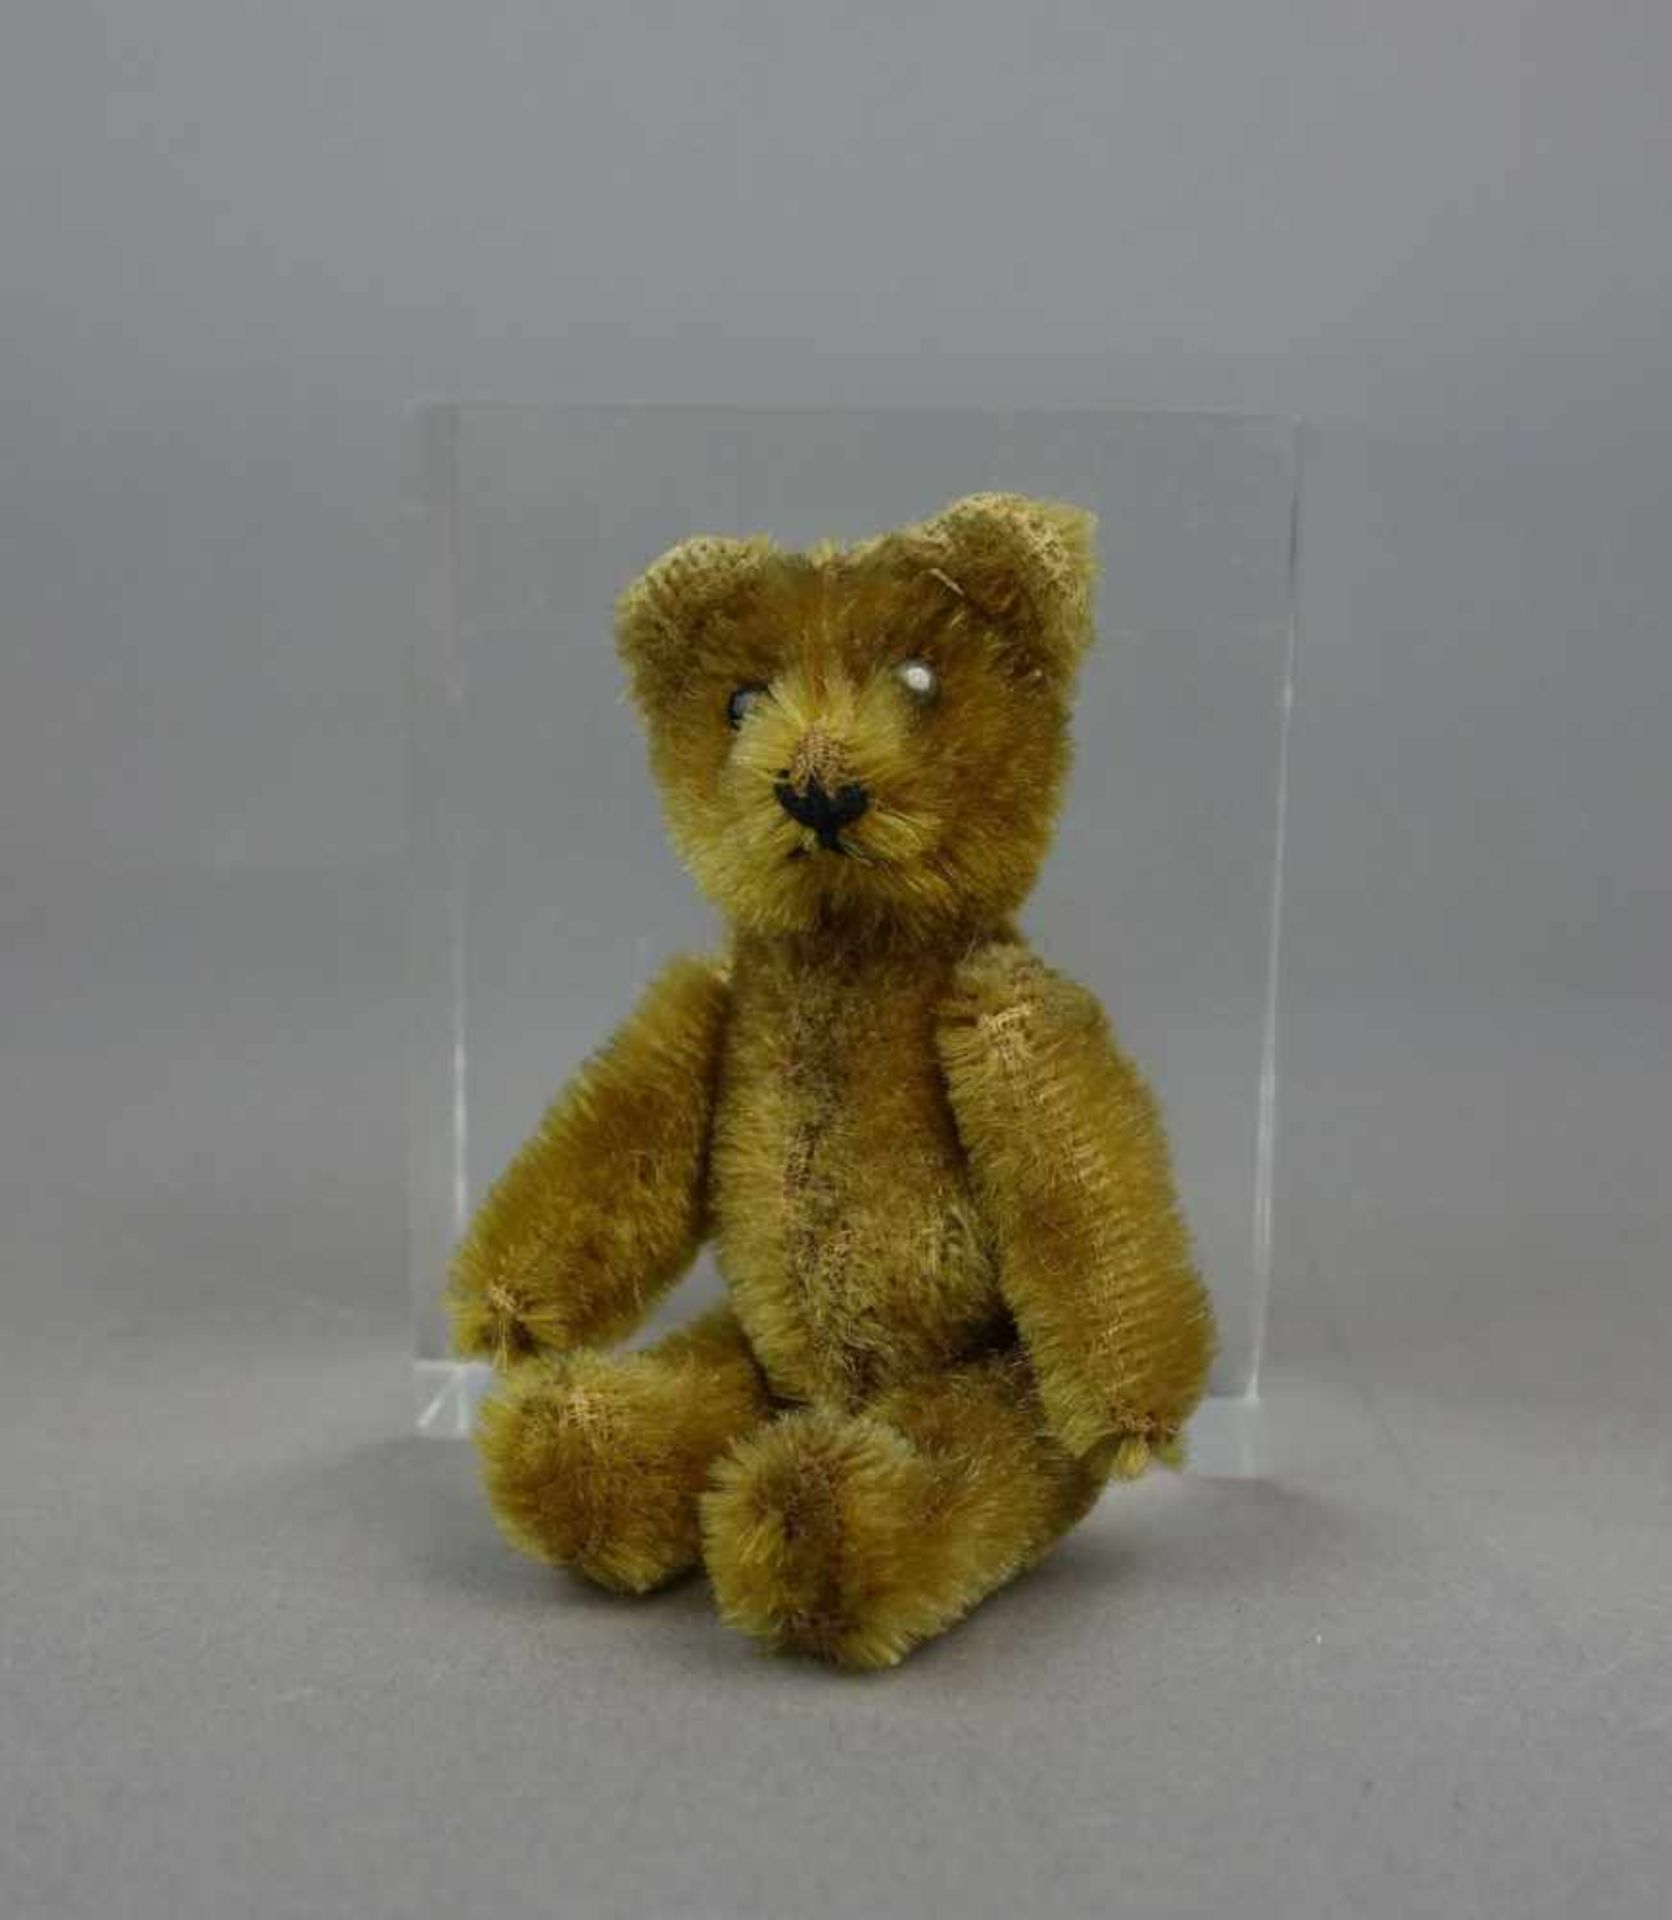 SPIELZEUG / TEDDYBÄR: JANUS-TEDDY SCHUCO / teddy bear, 1950er Jahre, Manufaktur Schuco / Nürnberg.